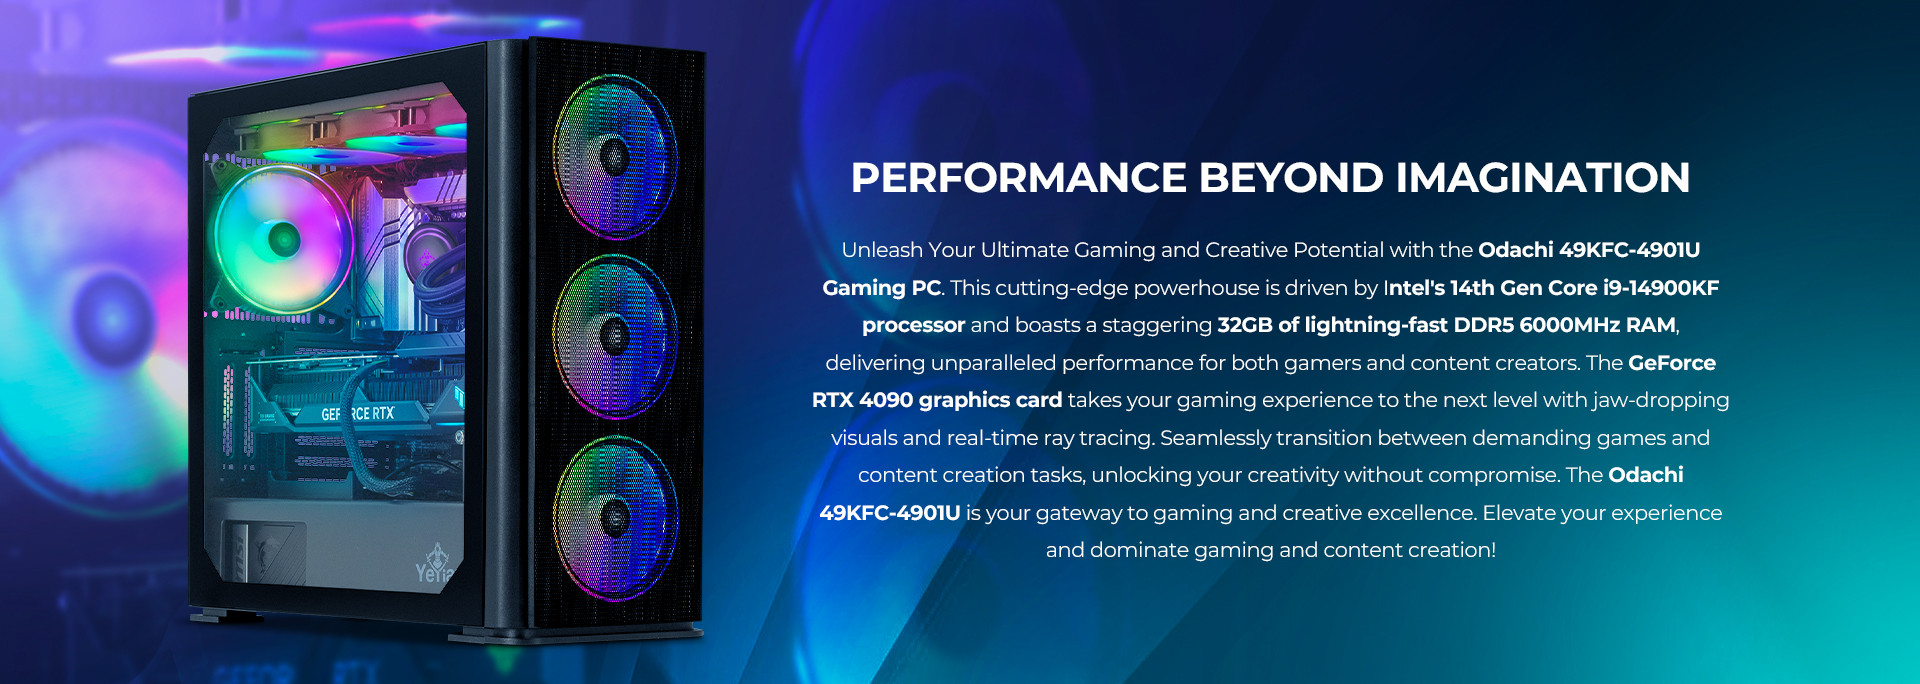  YEYIAN ODACHI Intel 13th Gen VR PC Gaming,i9 13900KF 5.80 GHz  Desktop Computer,RTX 4090 24GB, 32GB DDR5 RAM,2TB SSD,2TB HDD,Z790  Mobo,360mm AIO Liquid Cooled,Win 11 Home,7 ARGB Fans,1000W Platinum PSU 